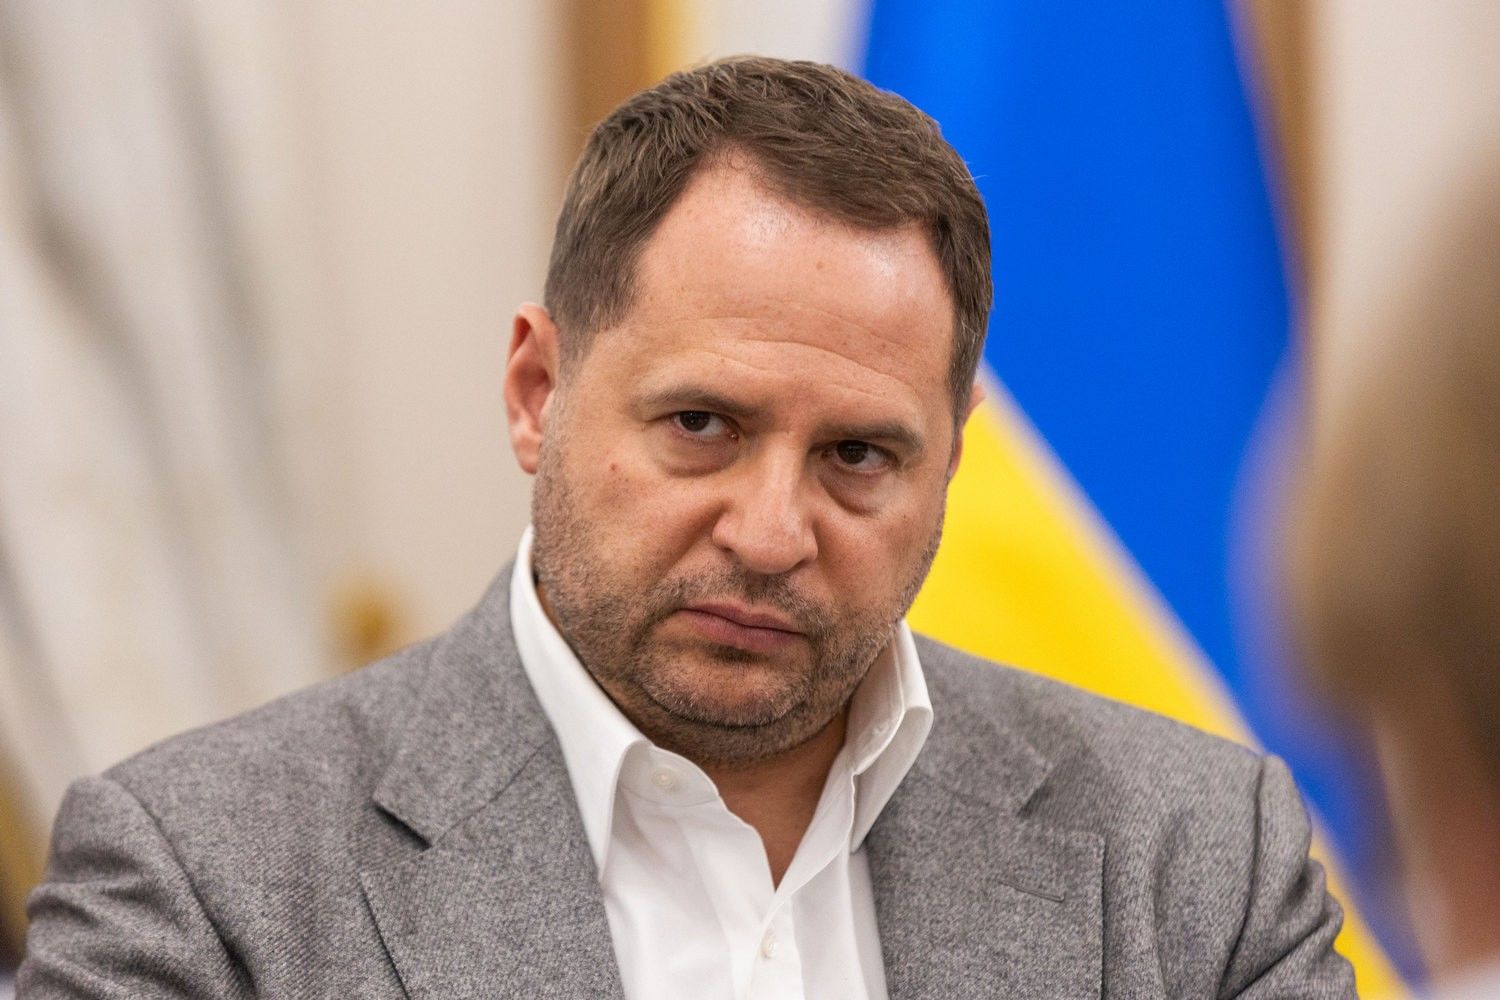 "Не закончим на этом", – у Зеленского сказали, что надо делать после выхода Украины на границы 91-го